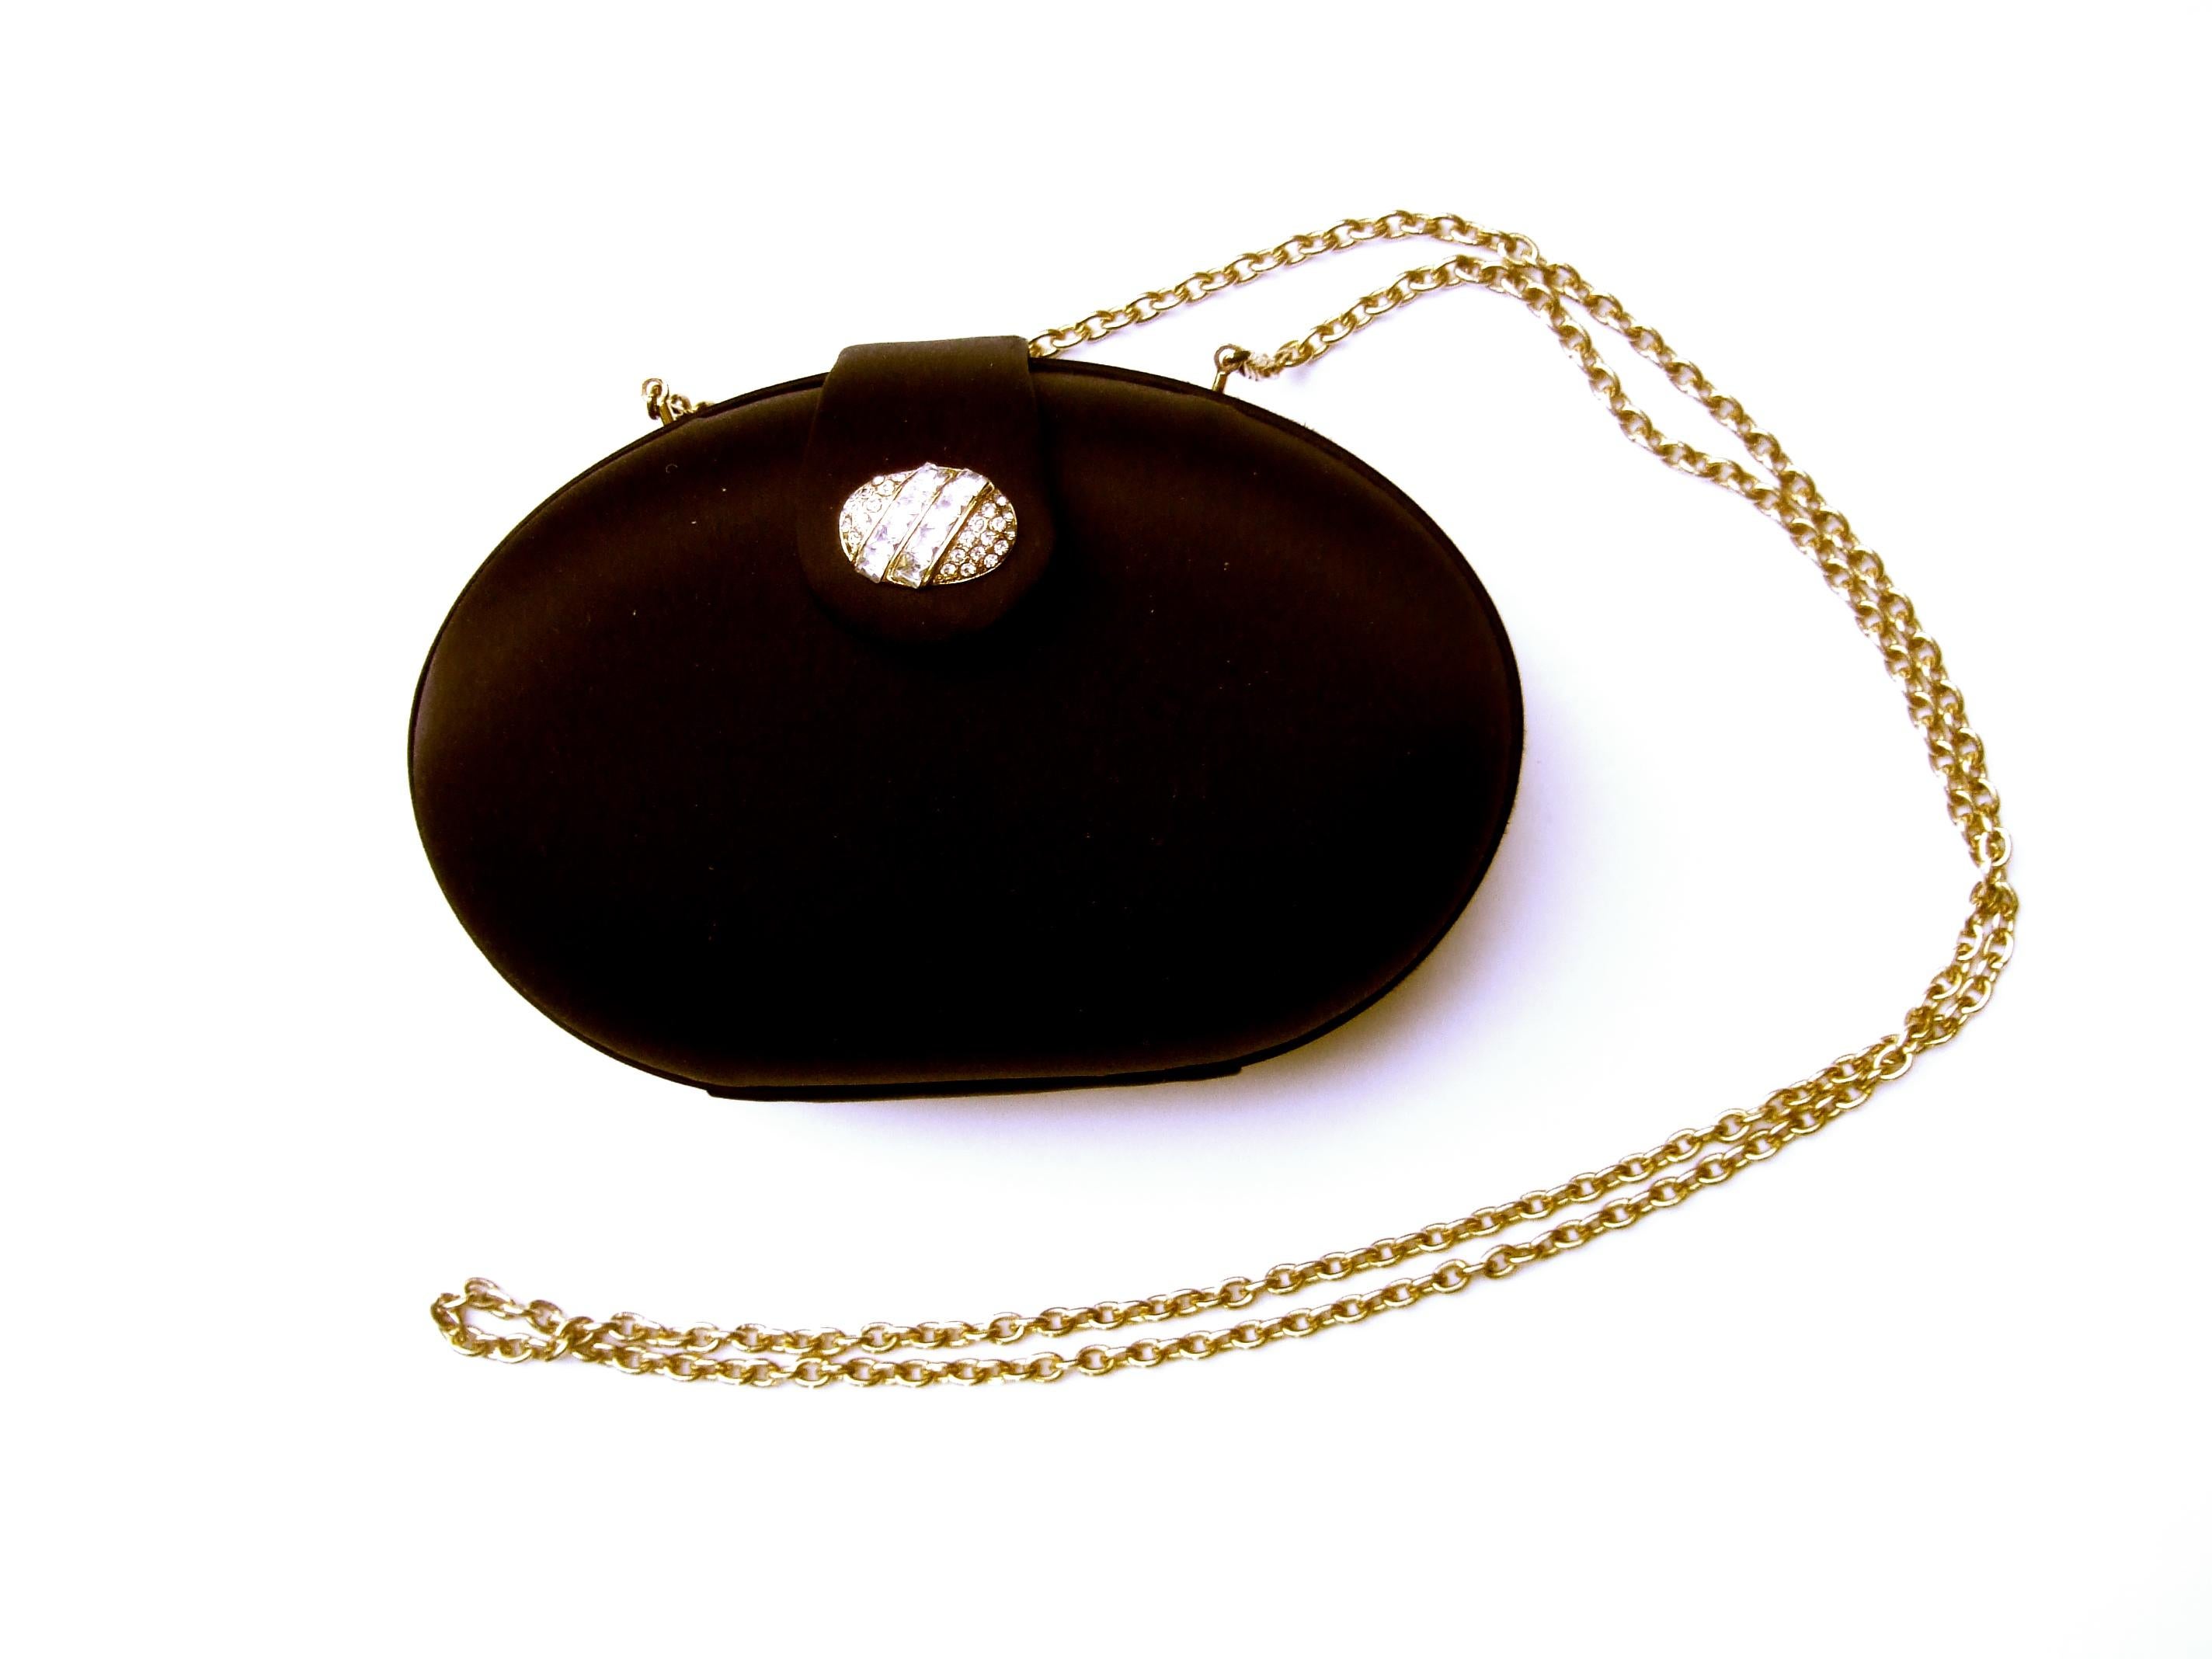 SAKS FIFTH AVENUE Black Satin Egg Shaped Versatile Clutch - Shoulder Bag c 1980s For Sale 2